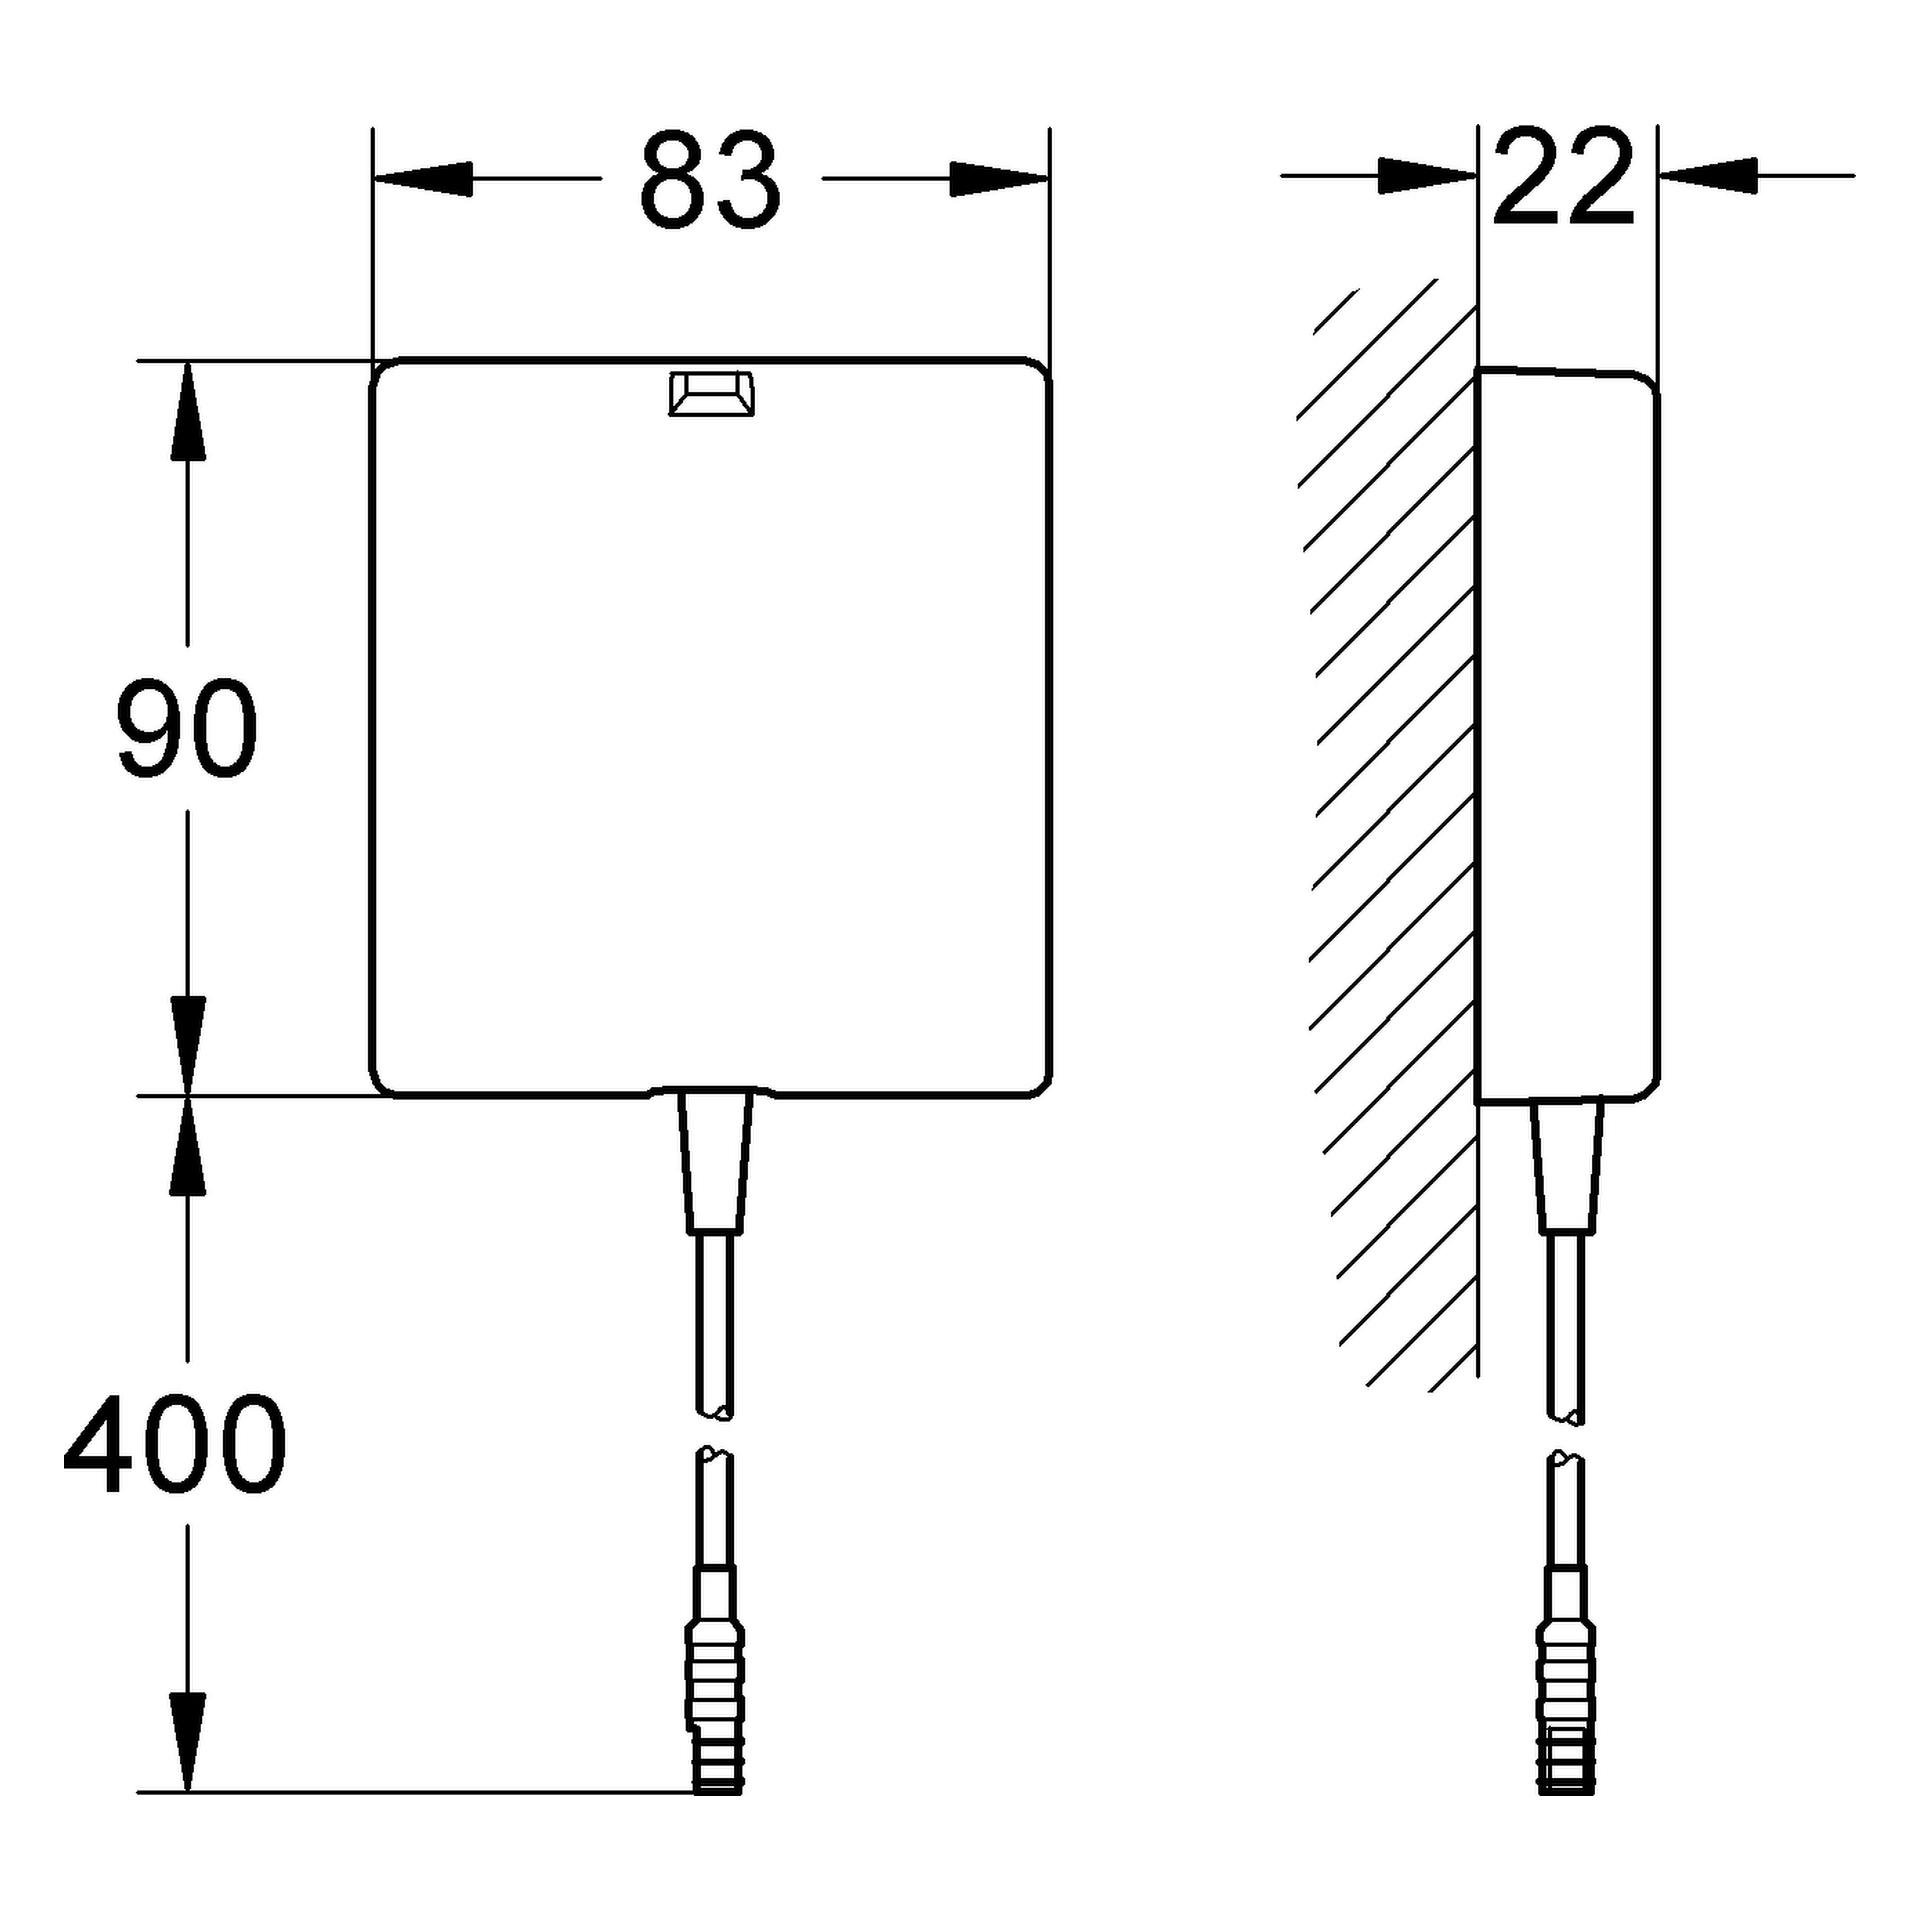 Schalternetzteil 36338, für Waschtisch-Elektronik mit 1-Auge-Infrarotsensor, Schalternetzteil mit Anschlussspannung 100-230 V AC, 50 - 60 Hz, für UP-Dose mit Abdeckung und Zugentlastung